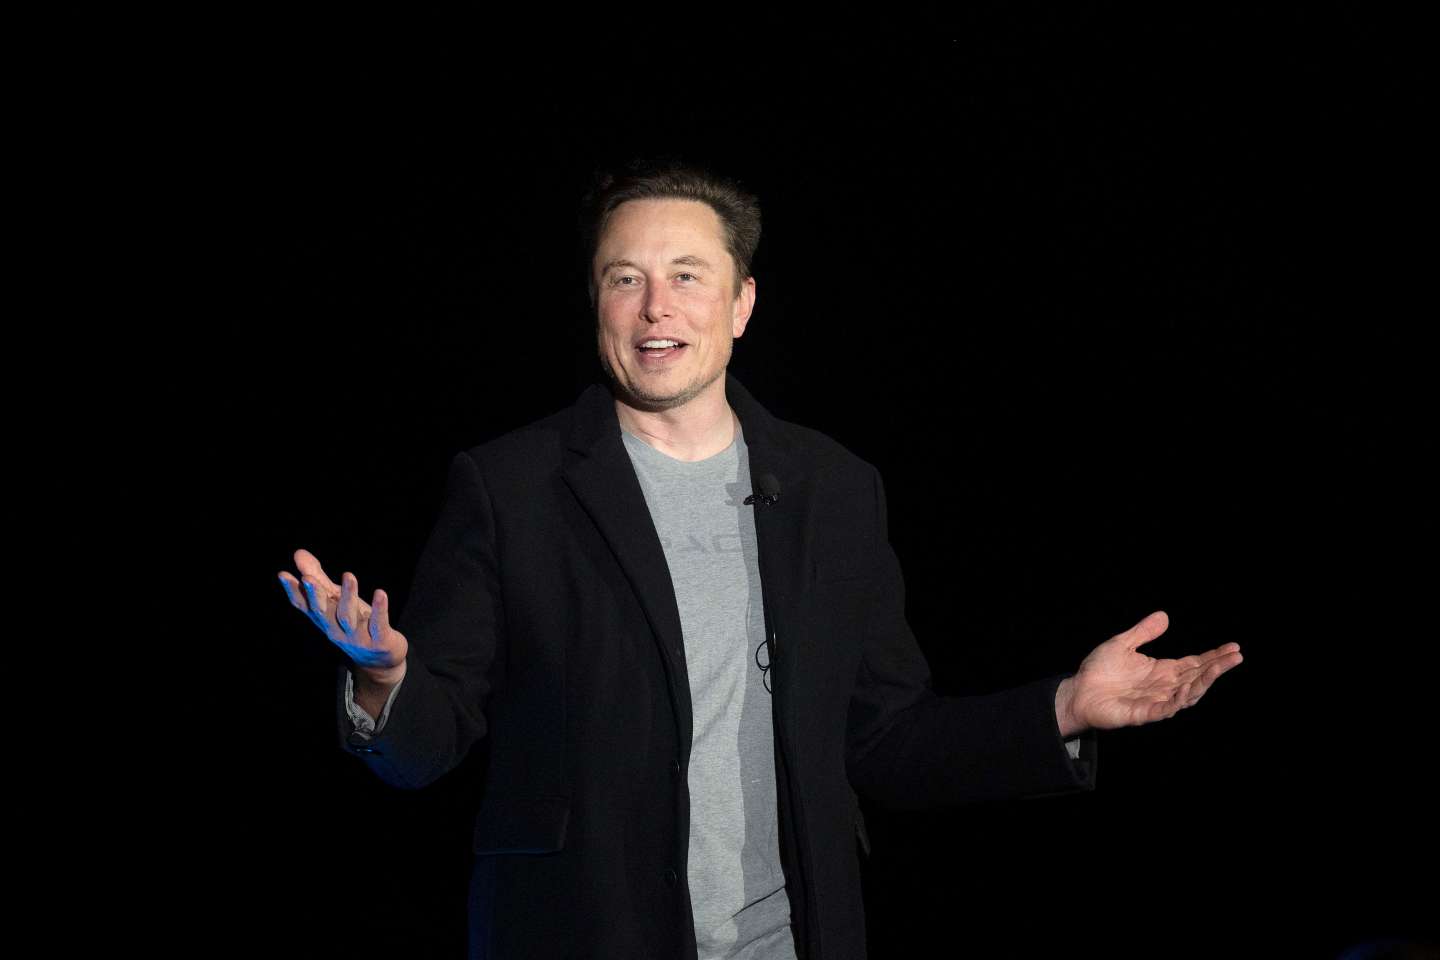 Elon Musk a racheté Twitter et licencié une partie de ses dirigeants